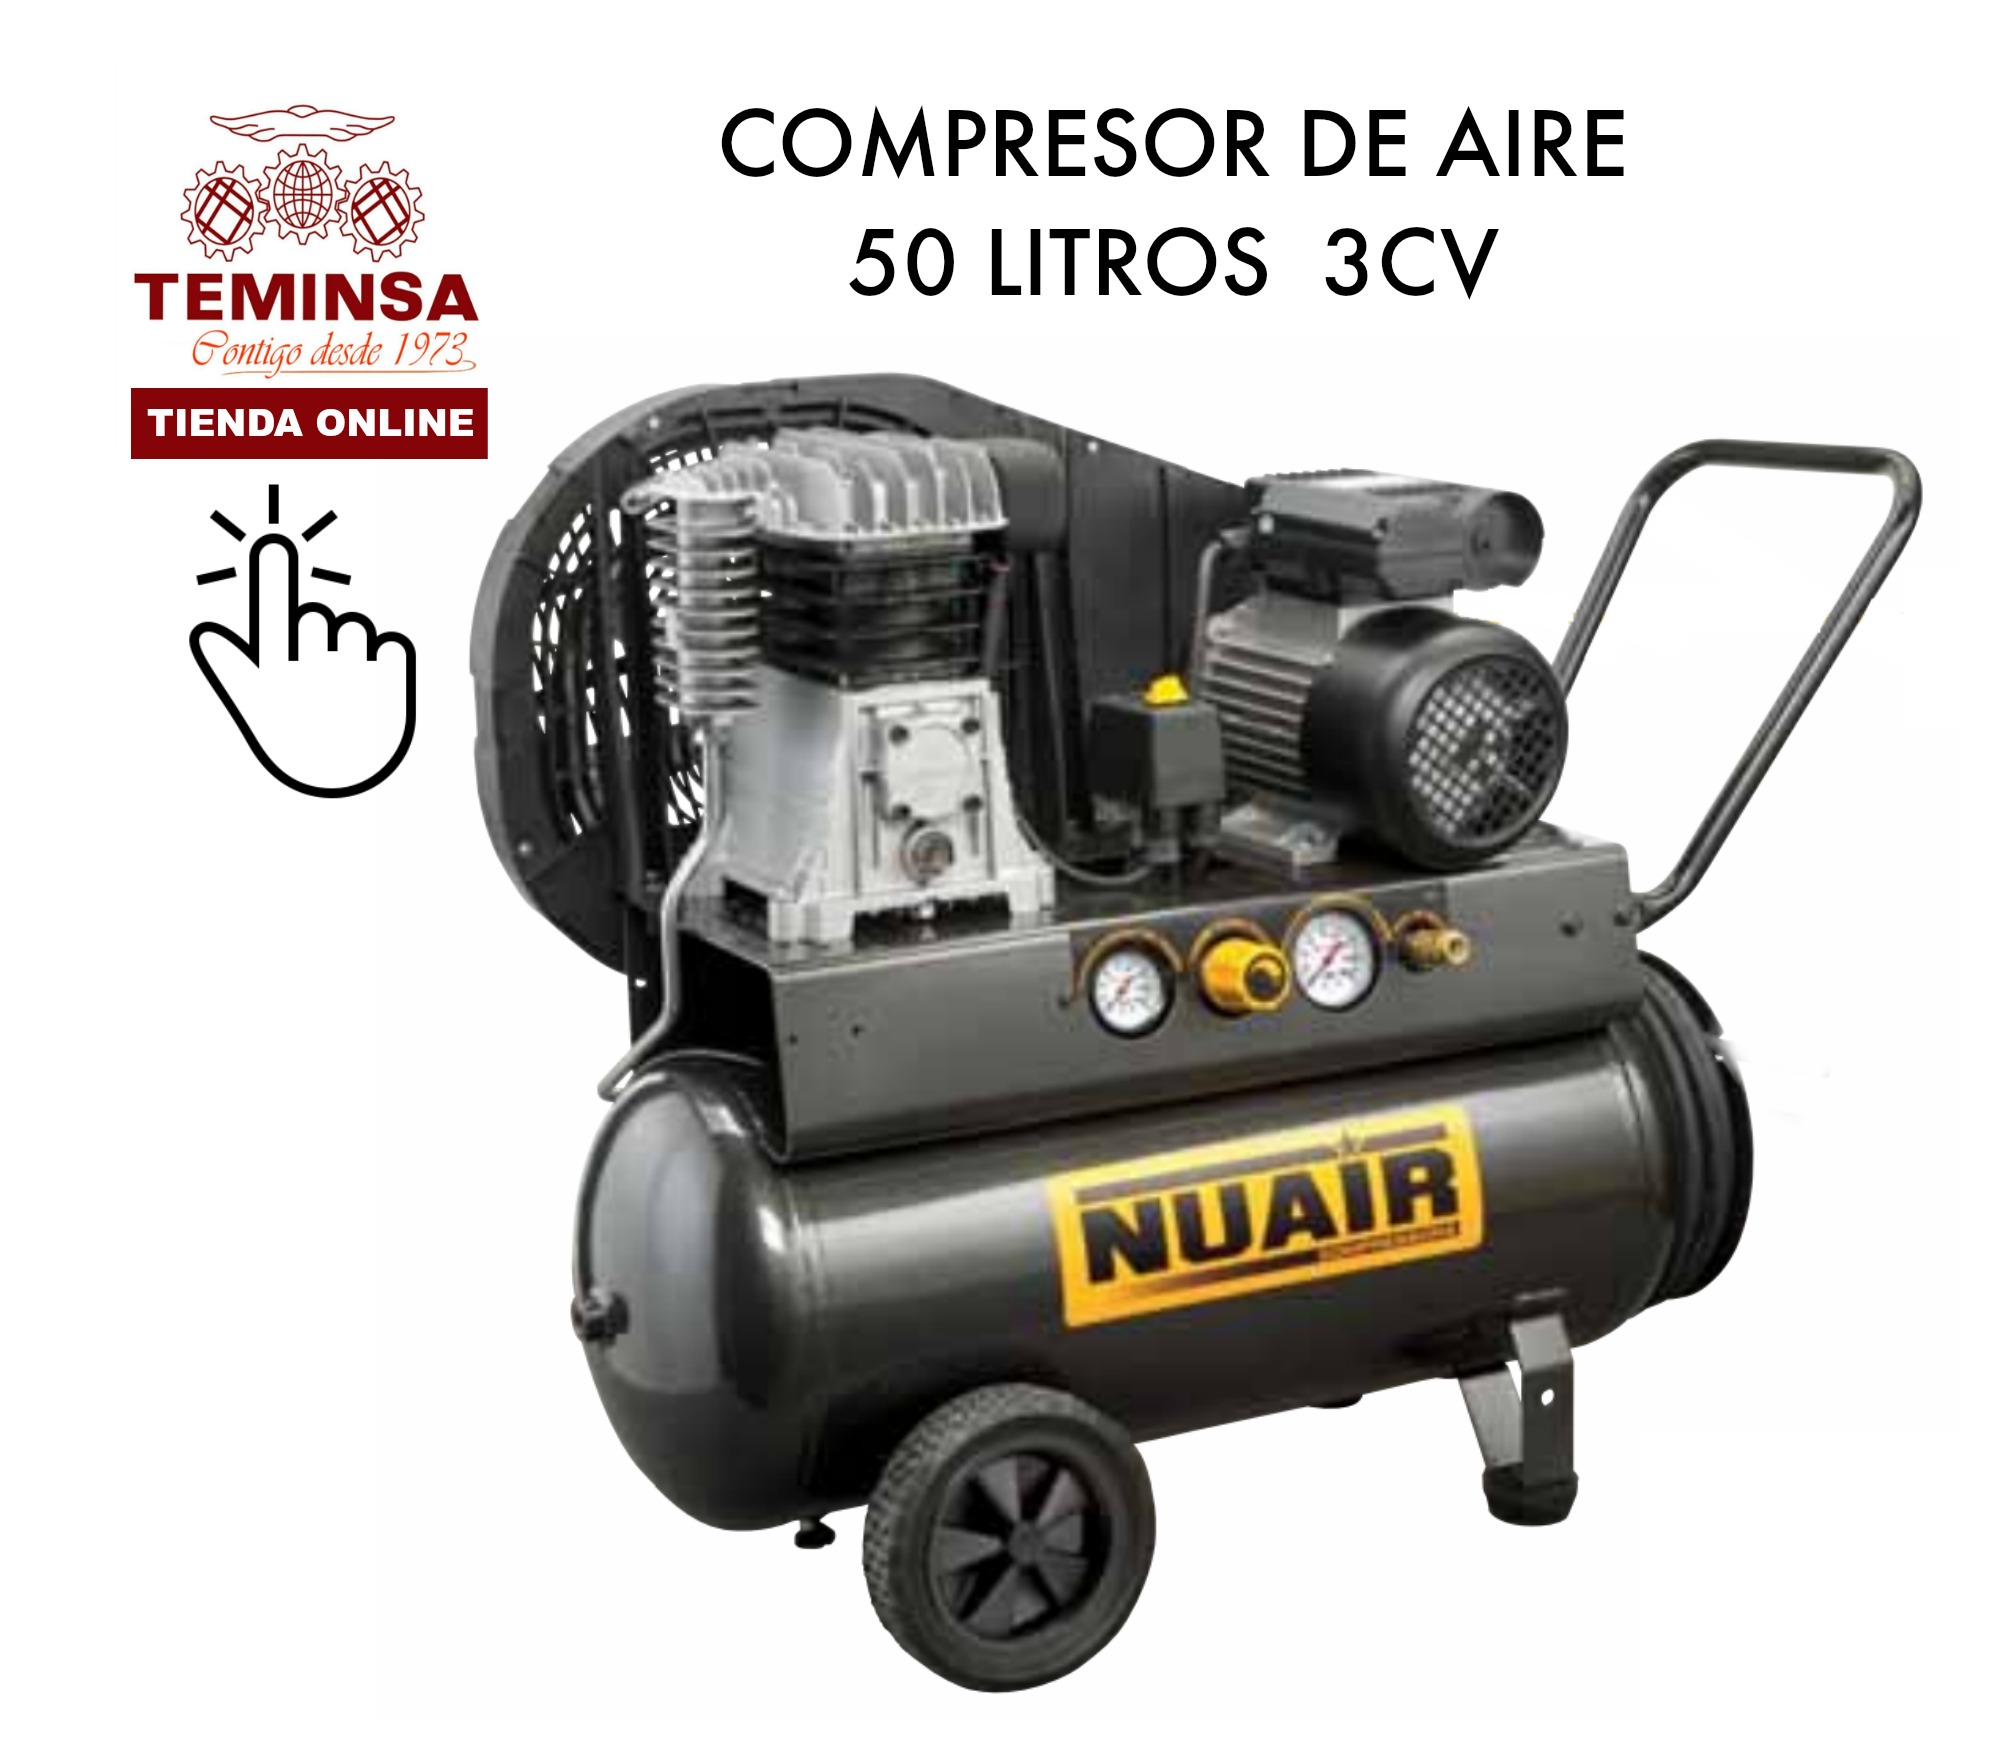 Compresor de Aire 20L 3CV Teminsa Online